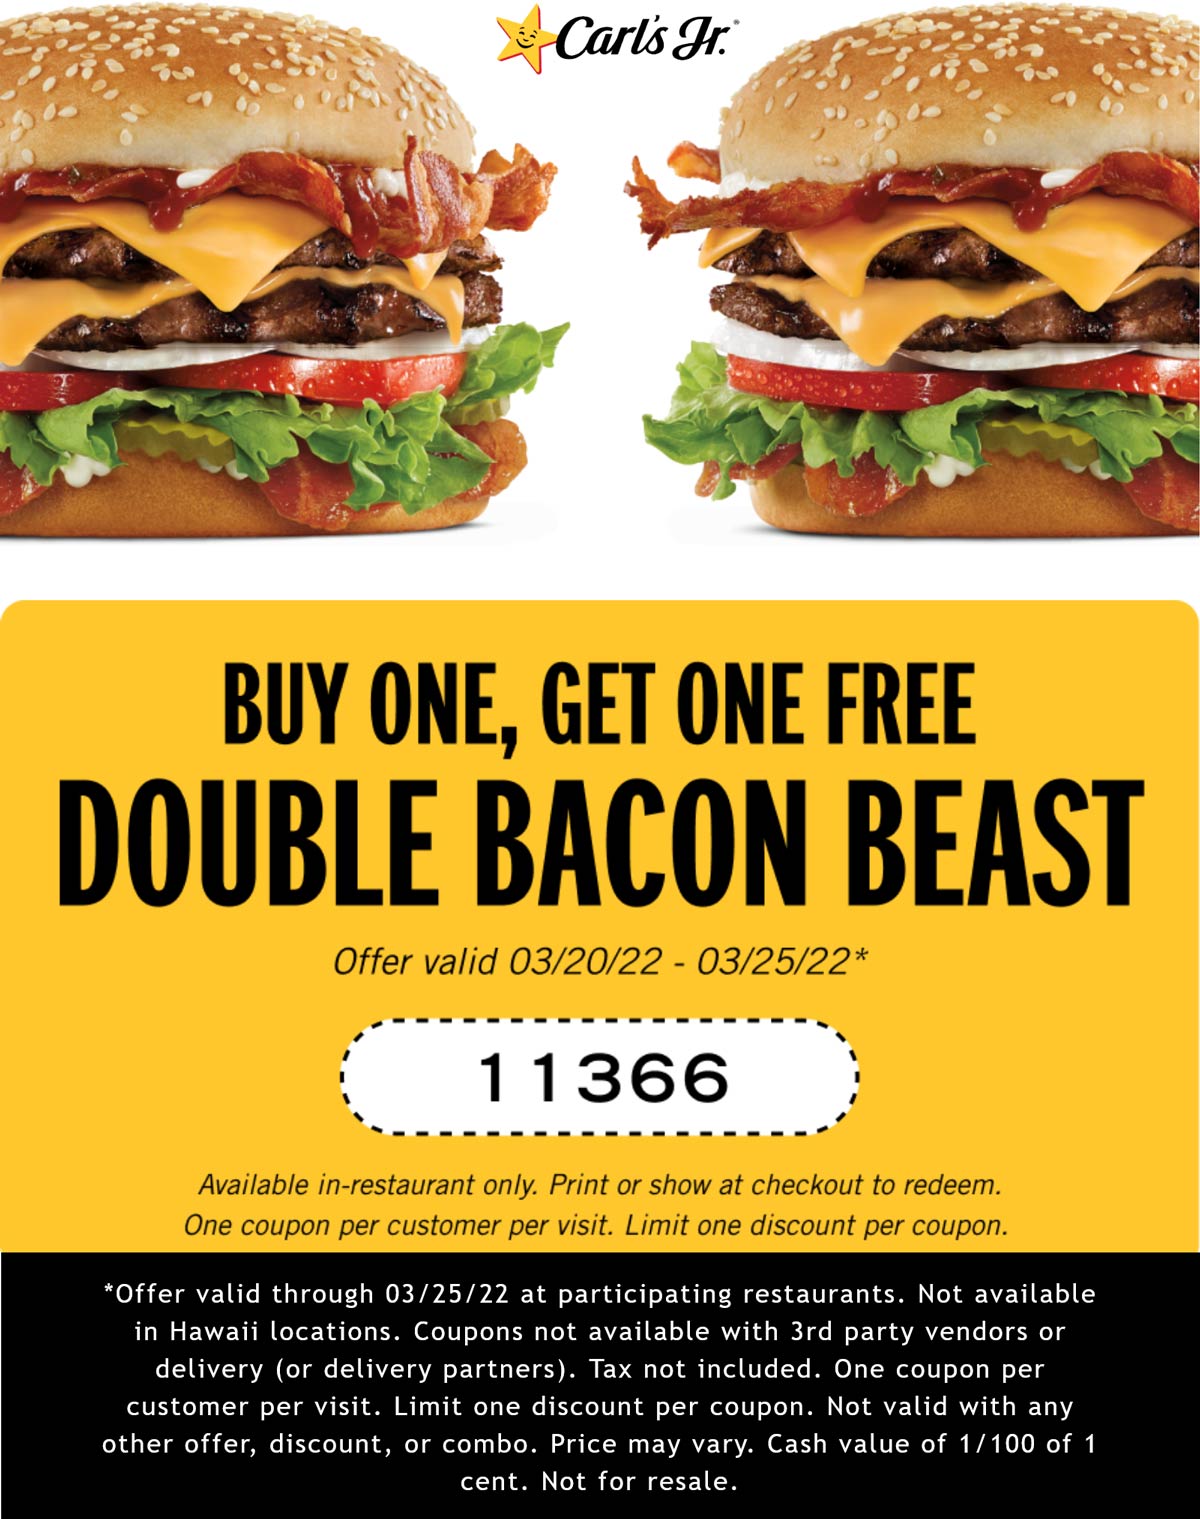 Carls Jr. restaurants Coupon  Second double bacon cheeseburger free at Carls Jr. #carlsjr 